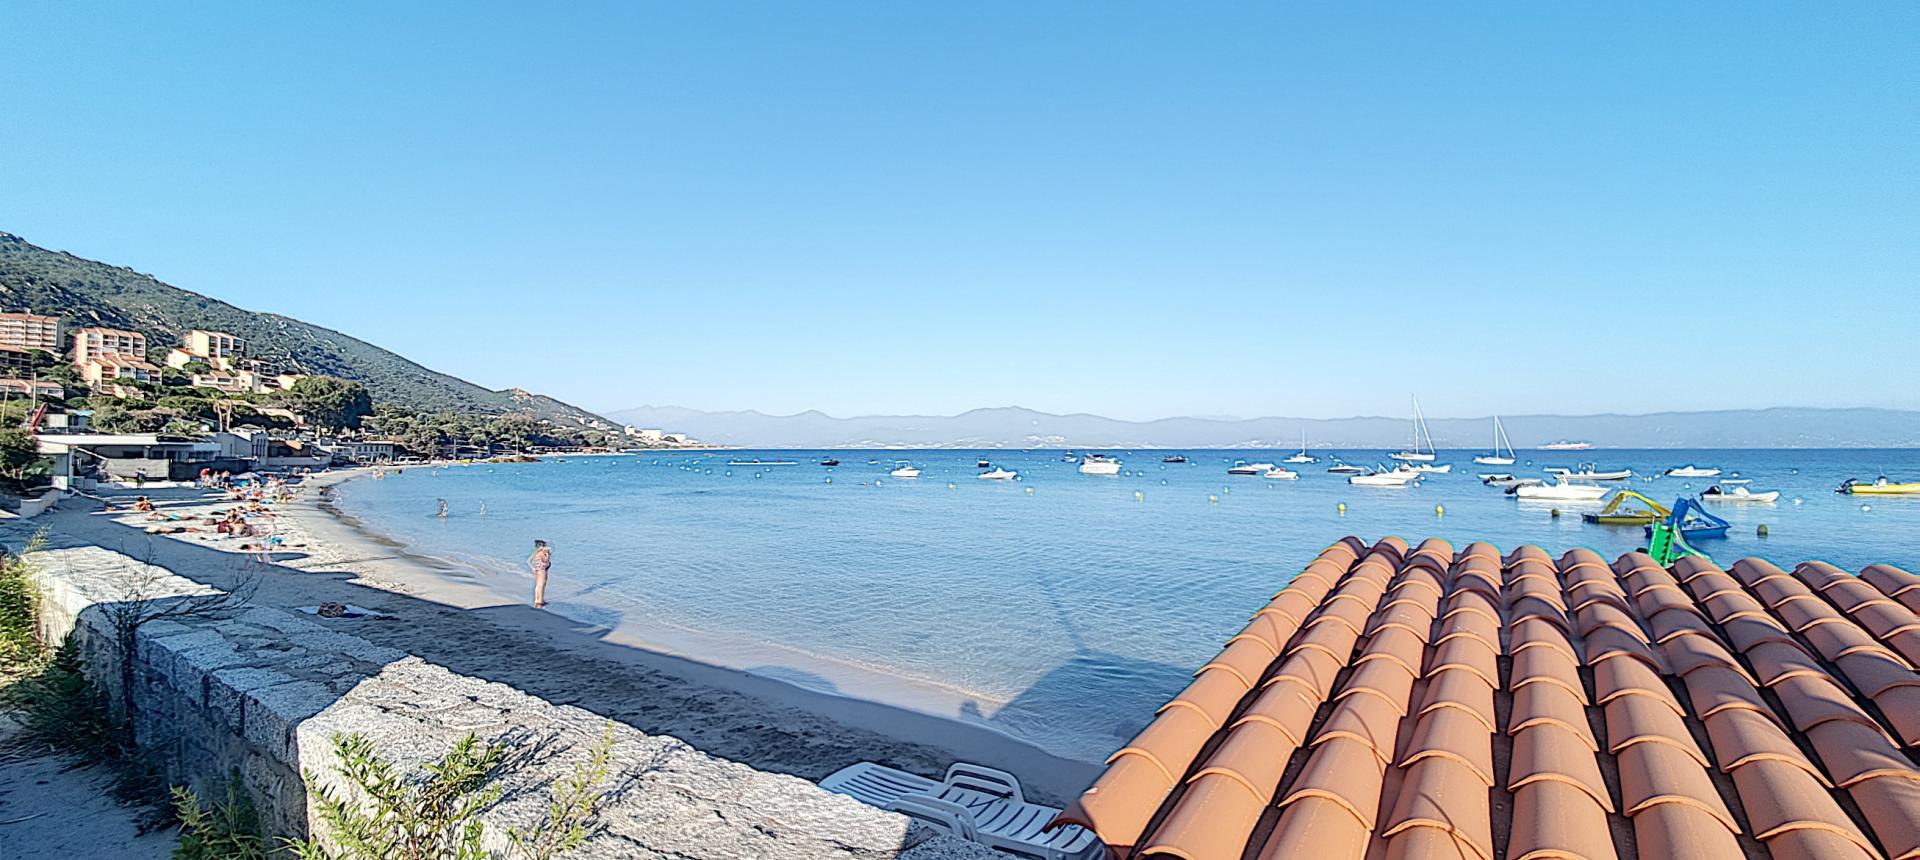 À vendre studio avec terrasse, et une magnifique vue mer - Ajaccio